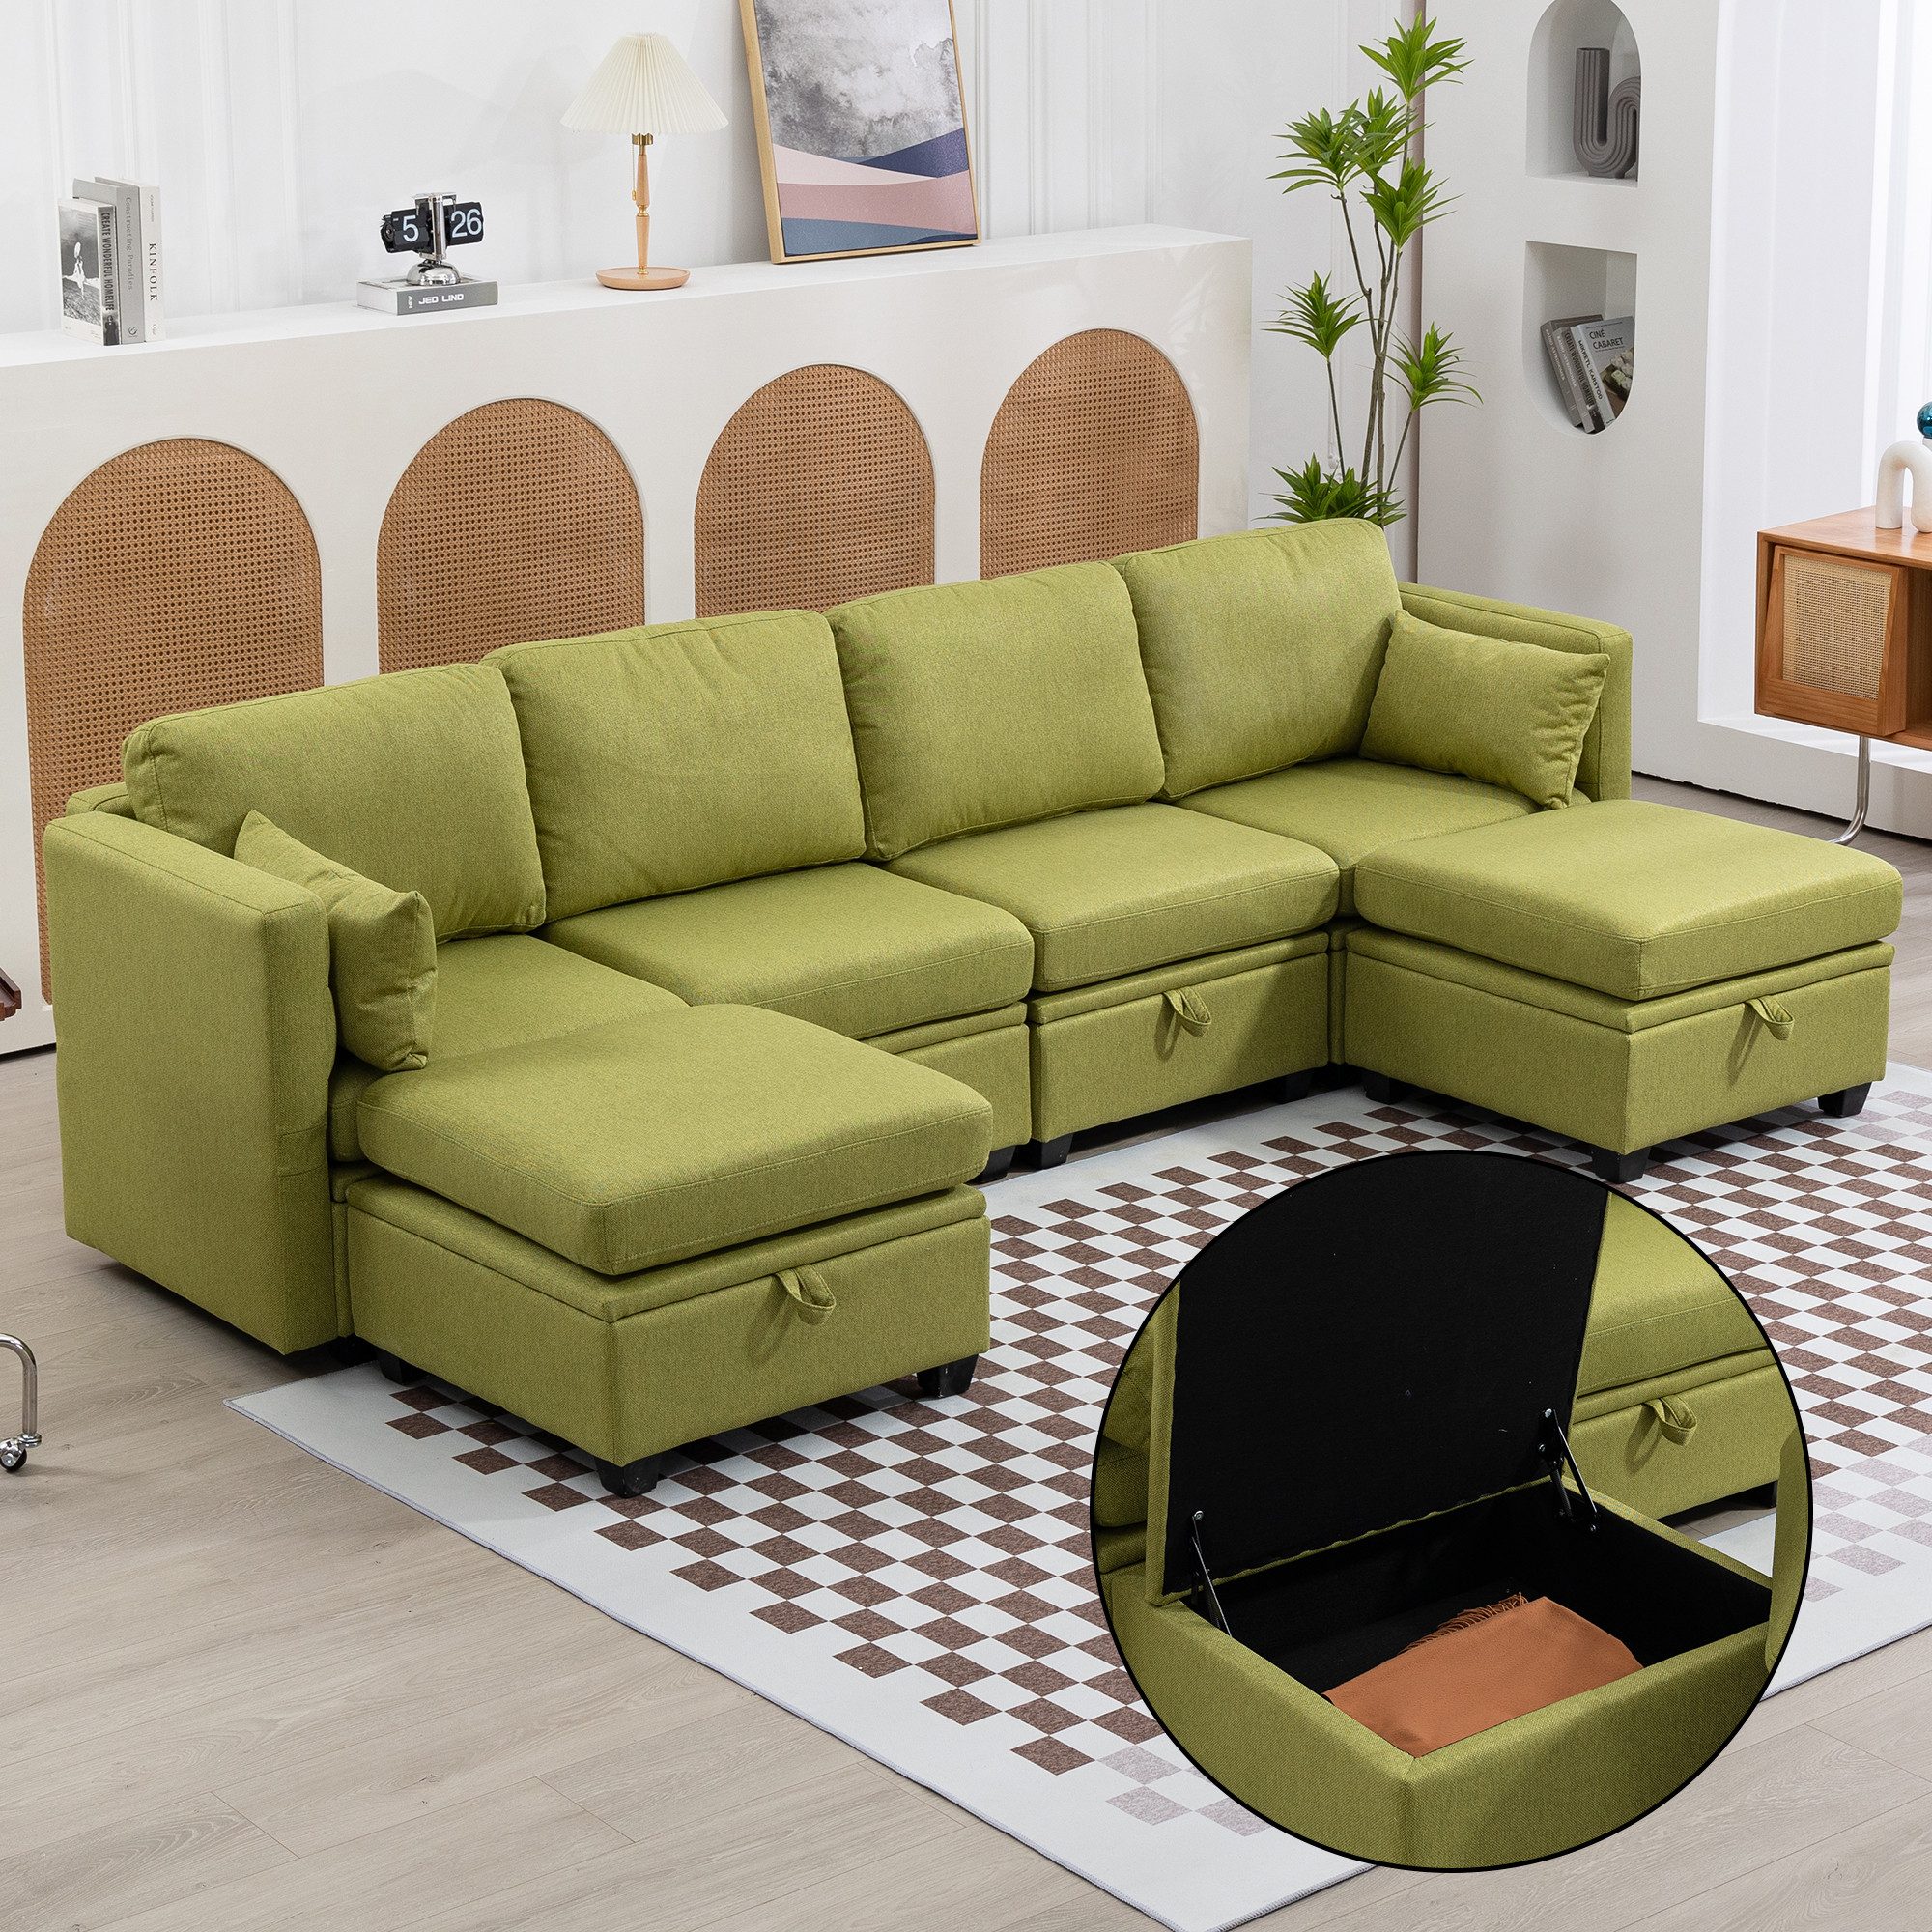 OKWISH Sofa U-förmiges Sektionalsofa mit Lagerung, casual Splicing kann als Doppelbettsofa verwendet werden, Armlehnen ausklappbarer Leinenstoff, extra breites Schlafsofa für das Wohnzimmer